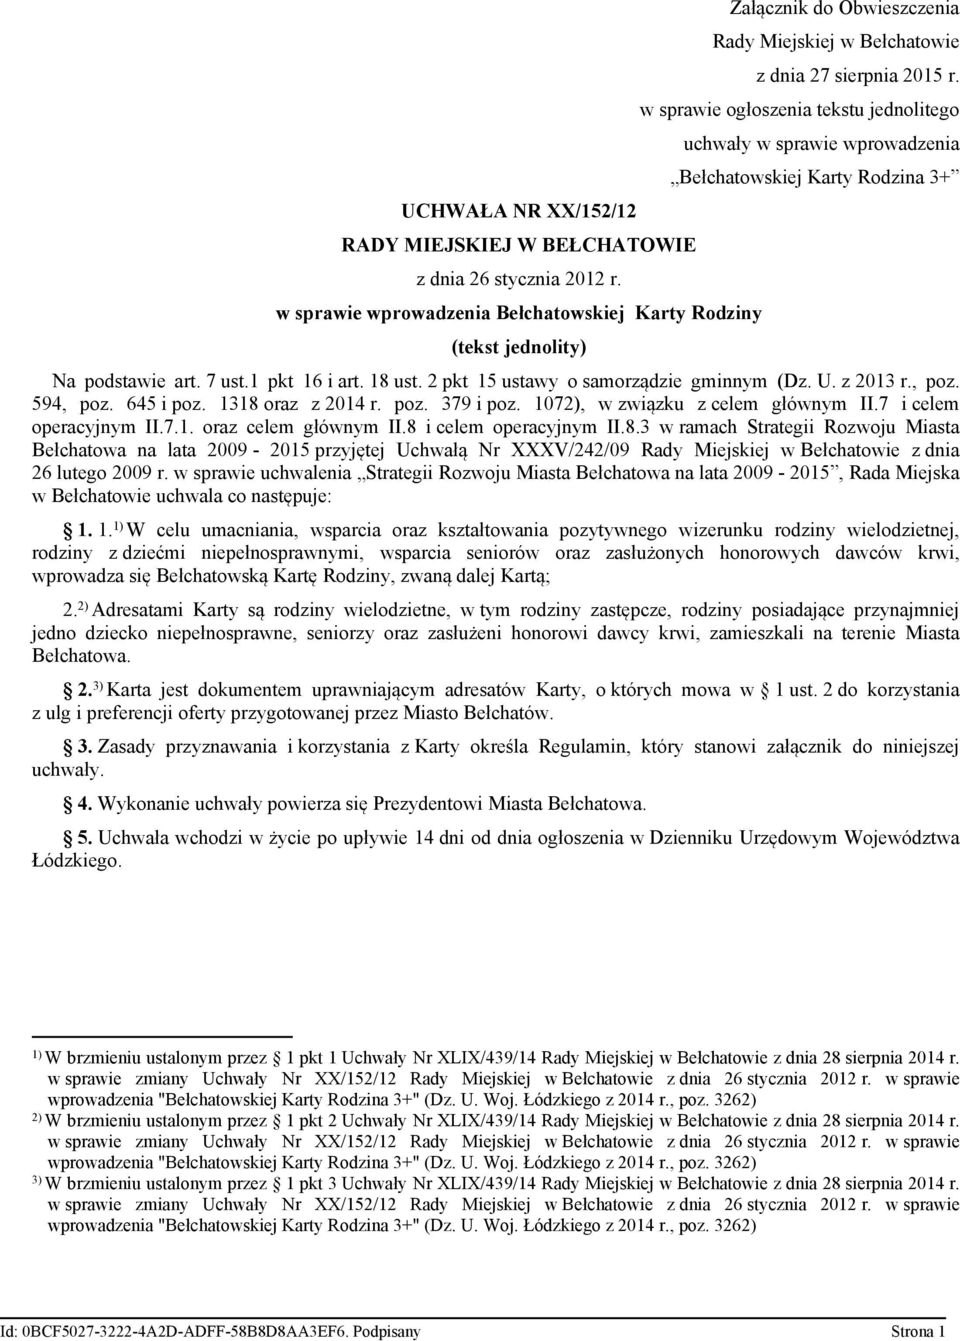 w sprawie ogłoszenia tekstu jednolitego uchwały w sprawie wprowadzenia Bełchatowskiej Karty Rodzina 3+ Na podstawie art. 7 ust.1 pkt 16 i art. 18 ust. 2 pkt 15 ustawy o samorządzie gminnym (Dz. U.